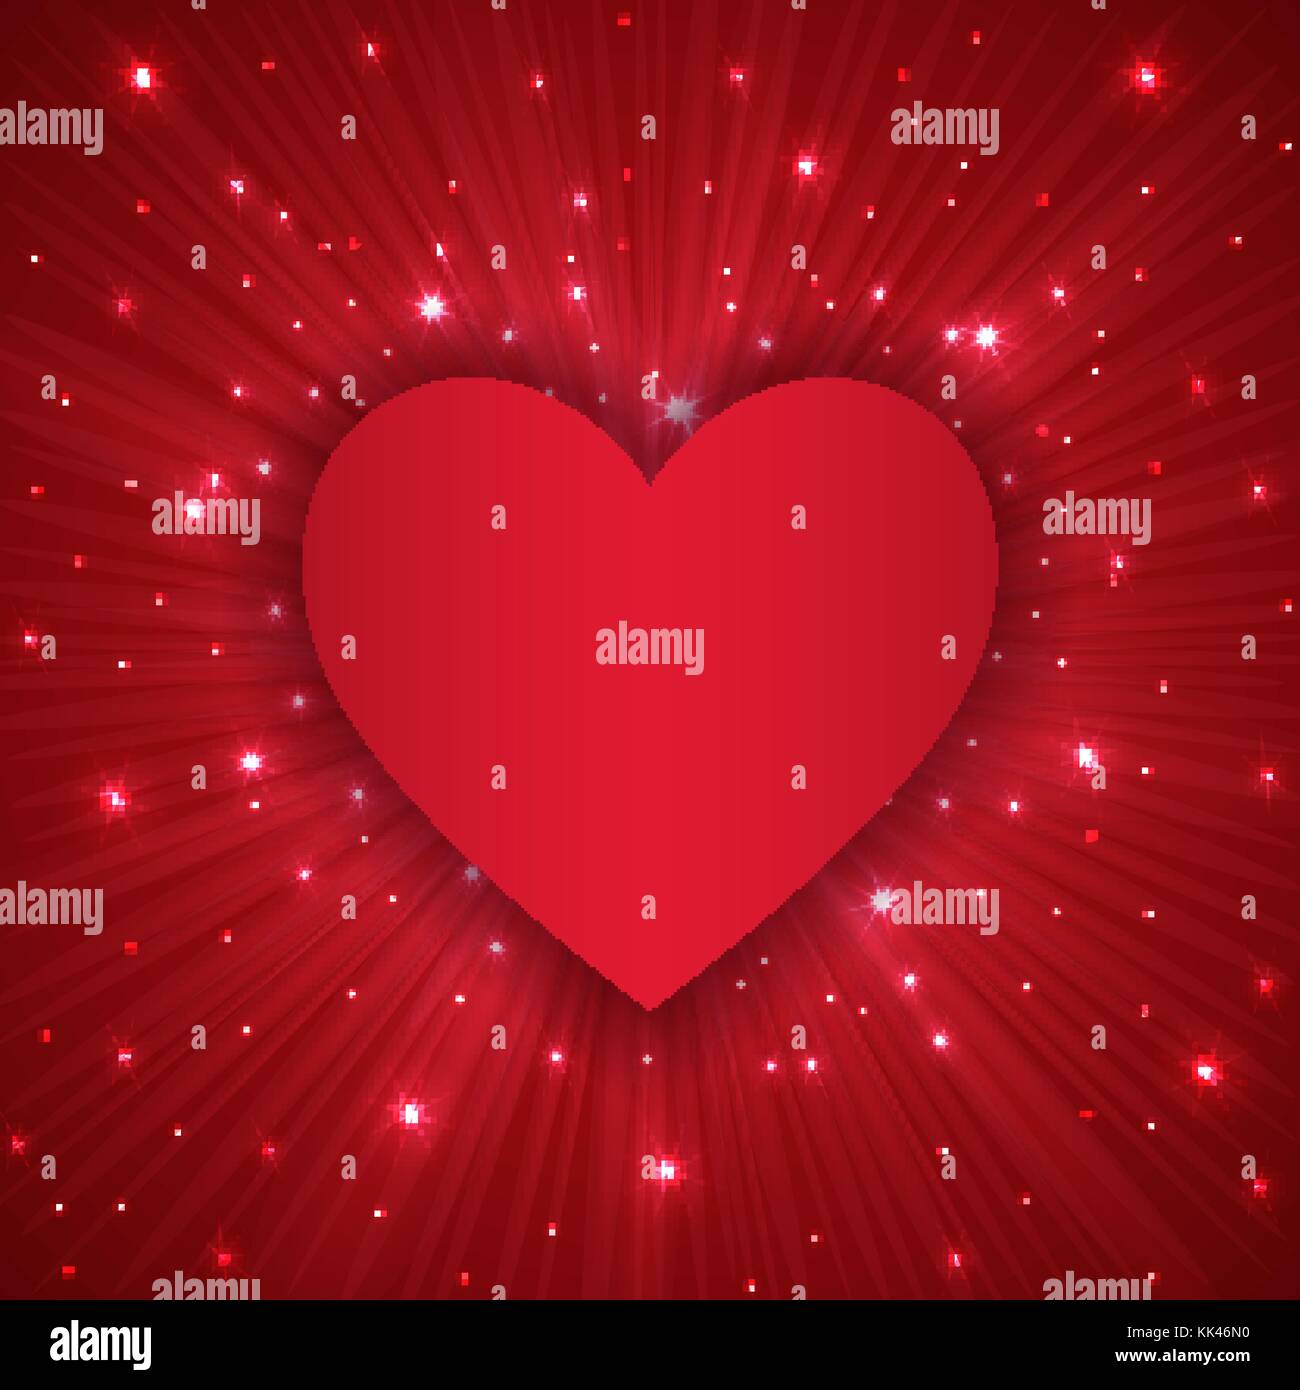 https://c8.alamy.com/compit/kk46n0/il-giorno-di-san-valentino-lo-sfondo-con-il-cuore-rosso-kk46n0.jpg